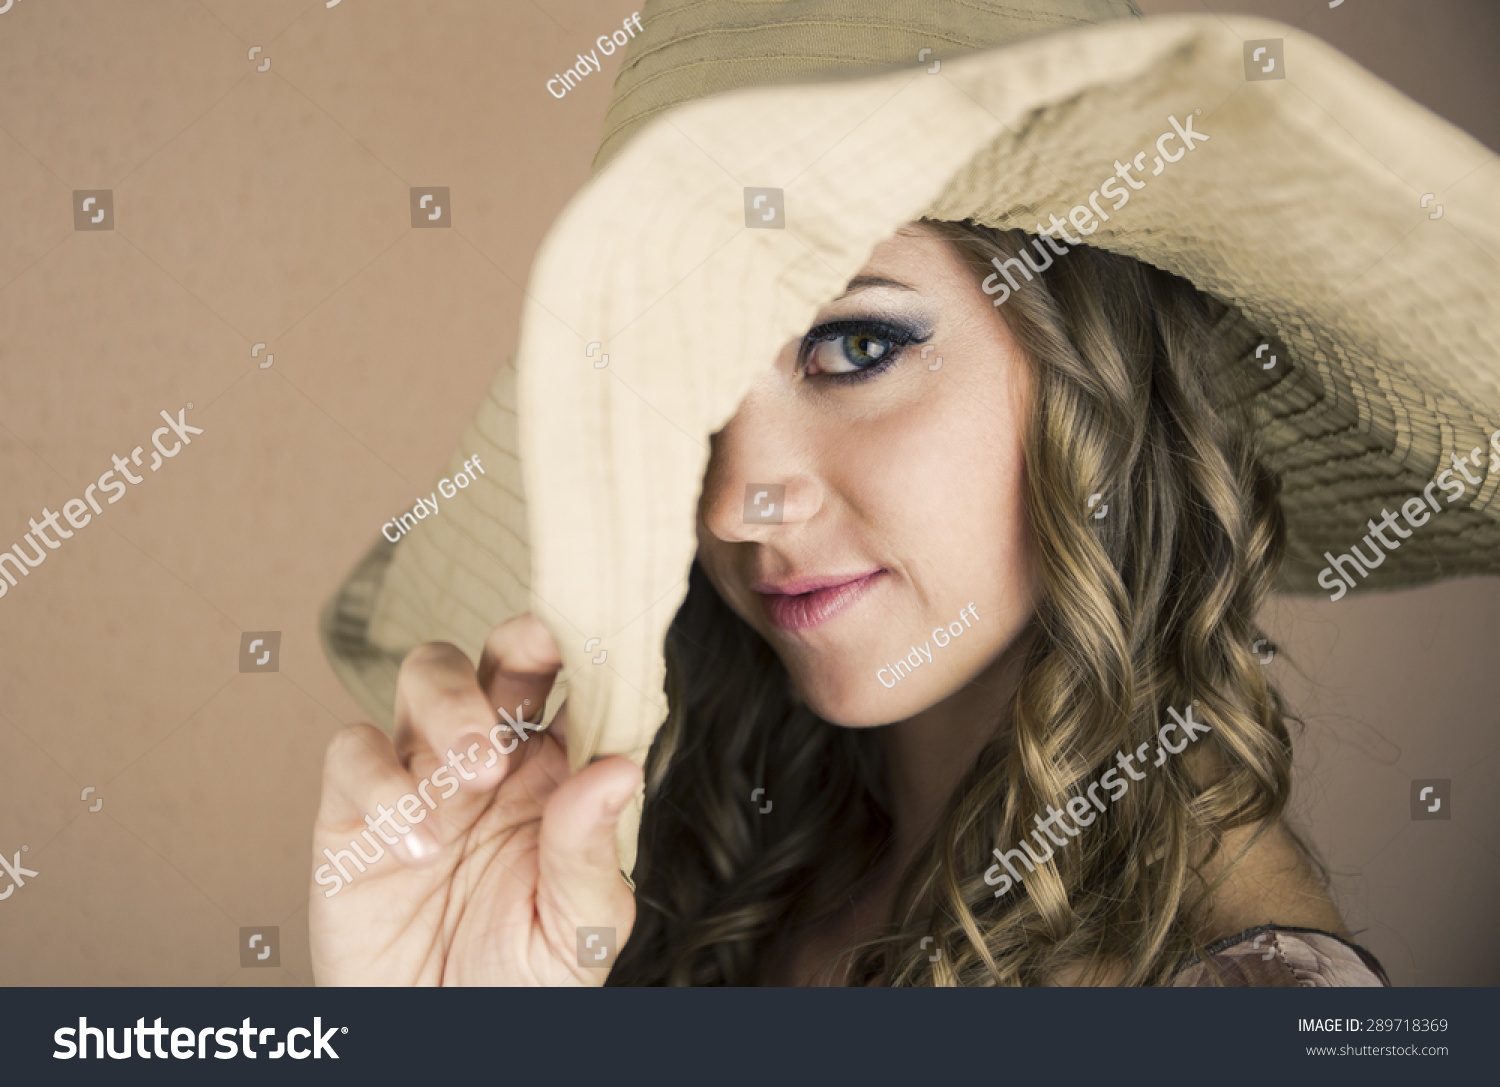 年轻漂亮的女人与大的帽子拉了一只眼睛。-人